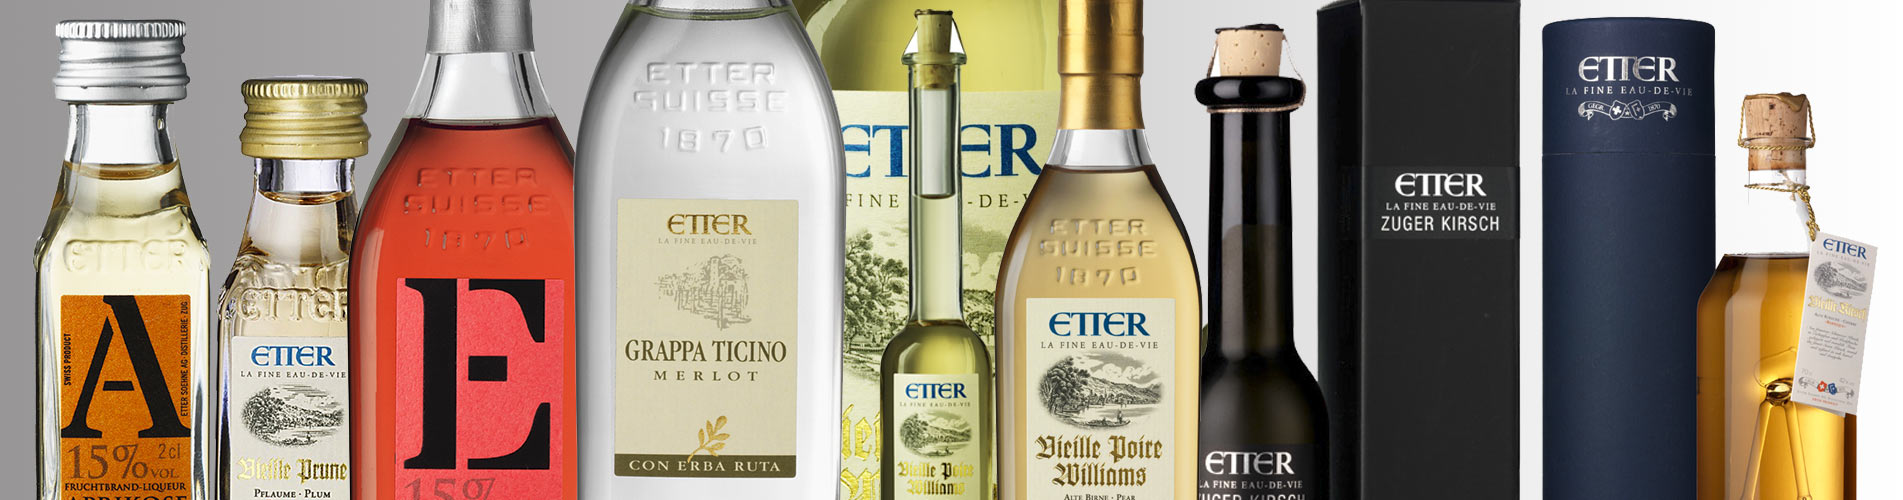 eau-de-vie, kirsch, poire Williams, mirabelle liqueurs et spiritueux distillerie Etter Suisse